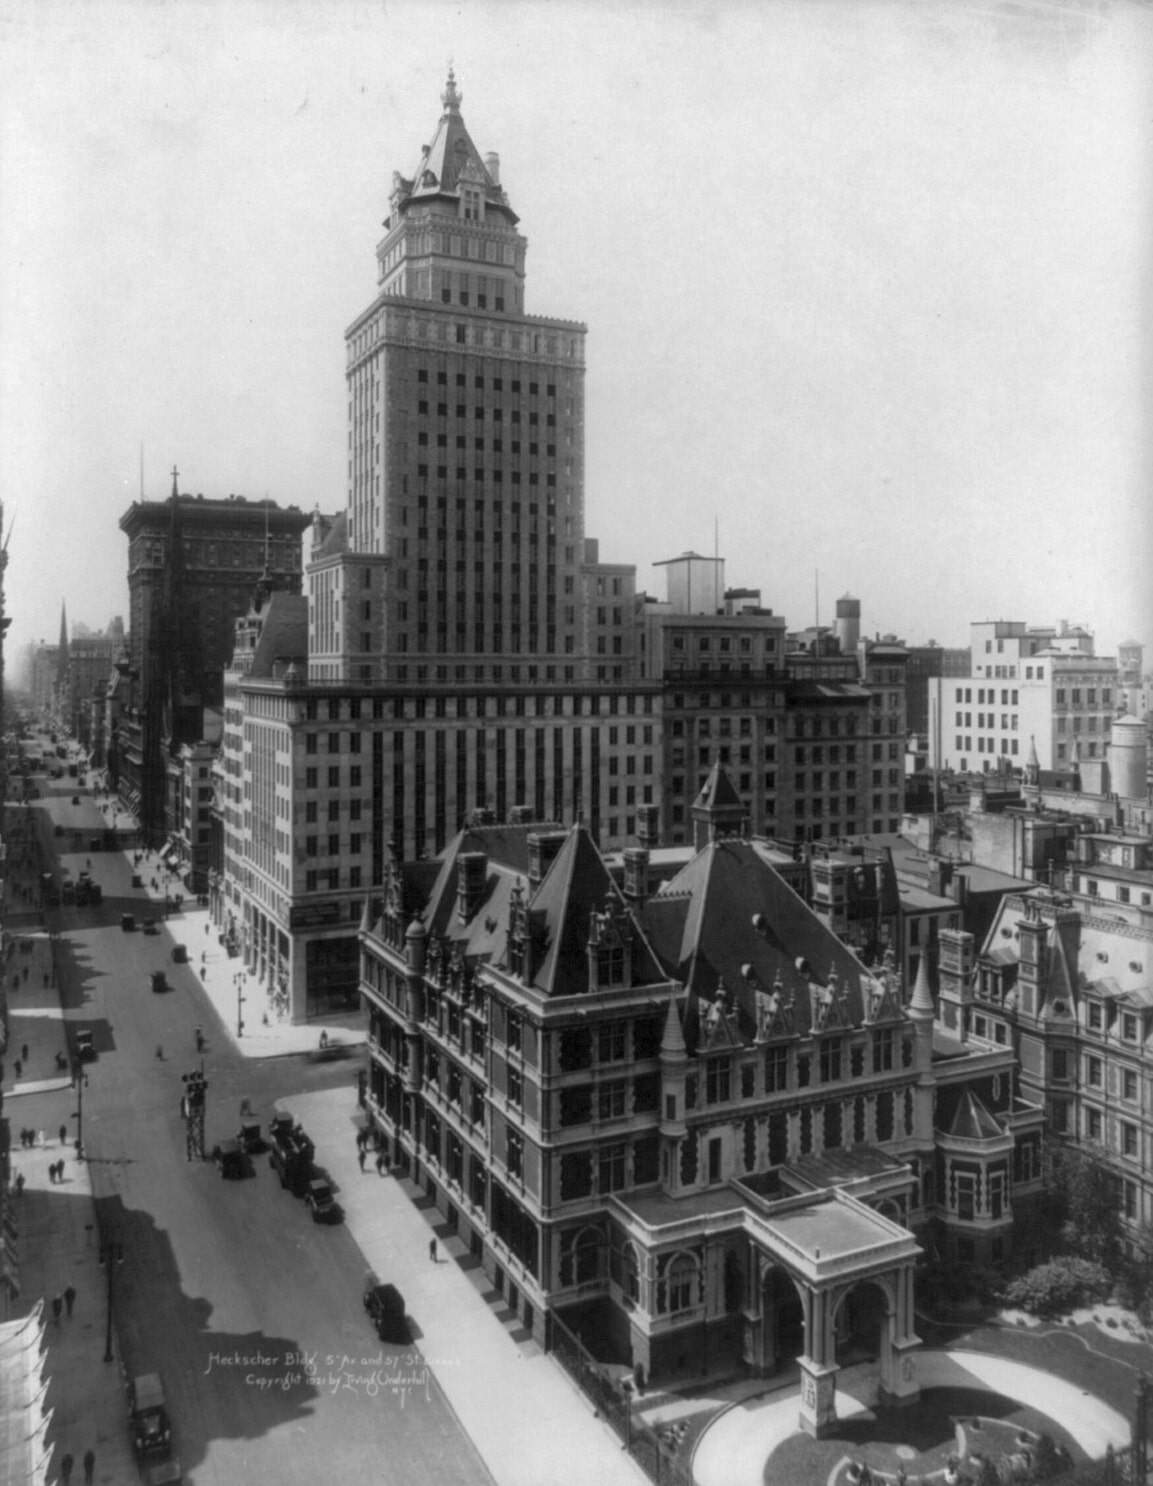 قامت لجنة الحفاظ على المعالم بتعيين مبنى هيكشر، وهو برج من عصر النهضة الفرنسية صممه وارن وويتمور من عام 1922